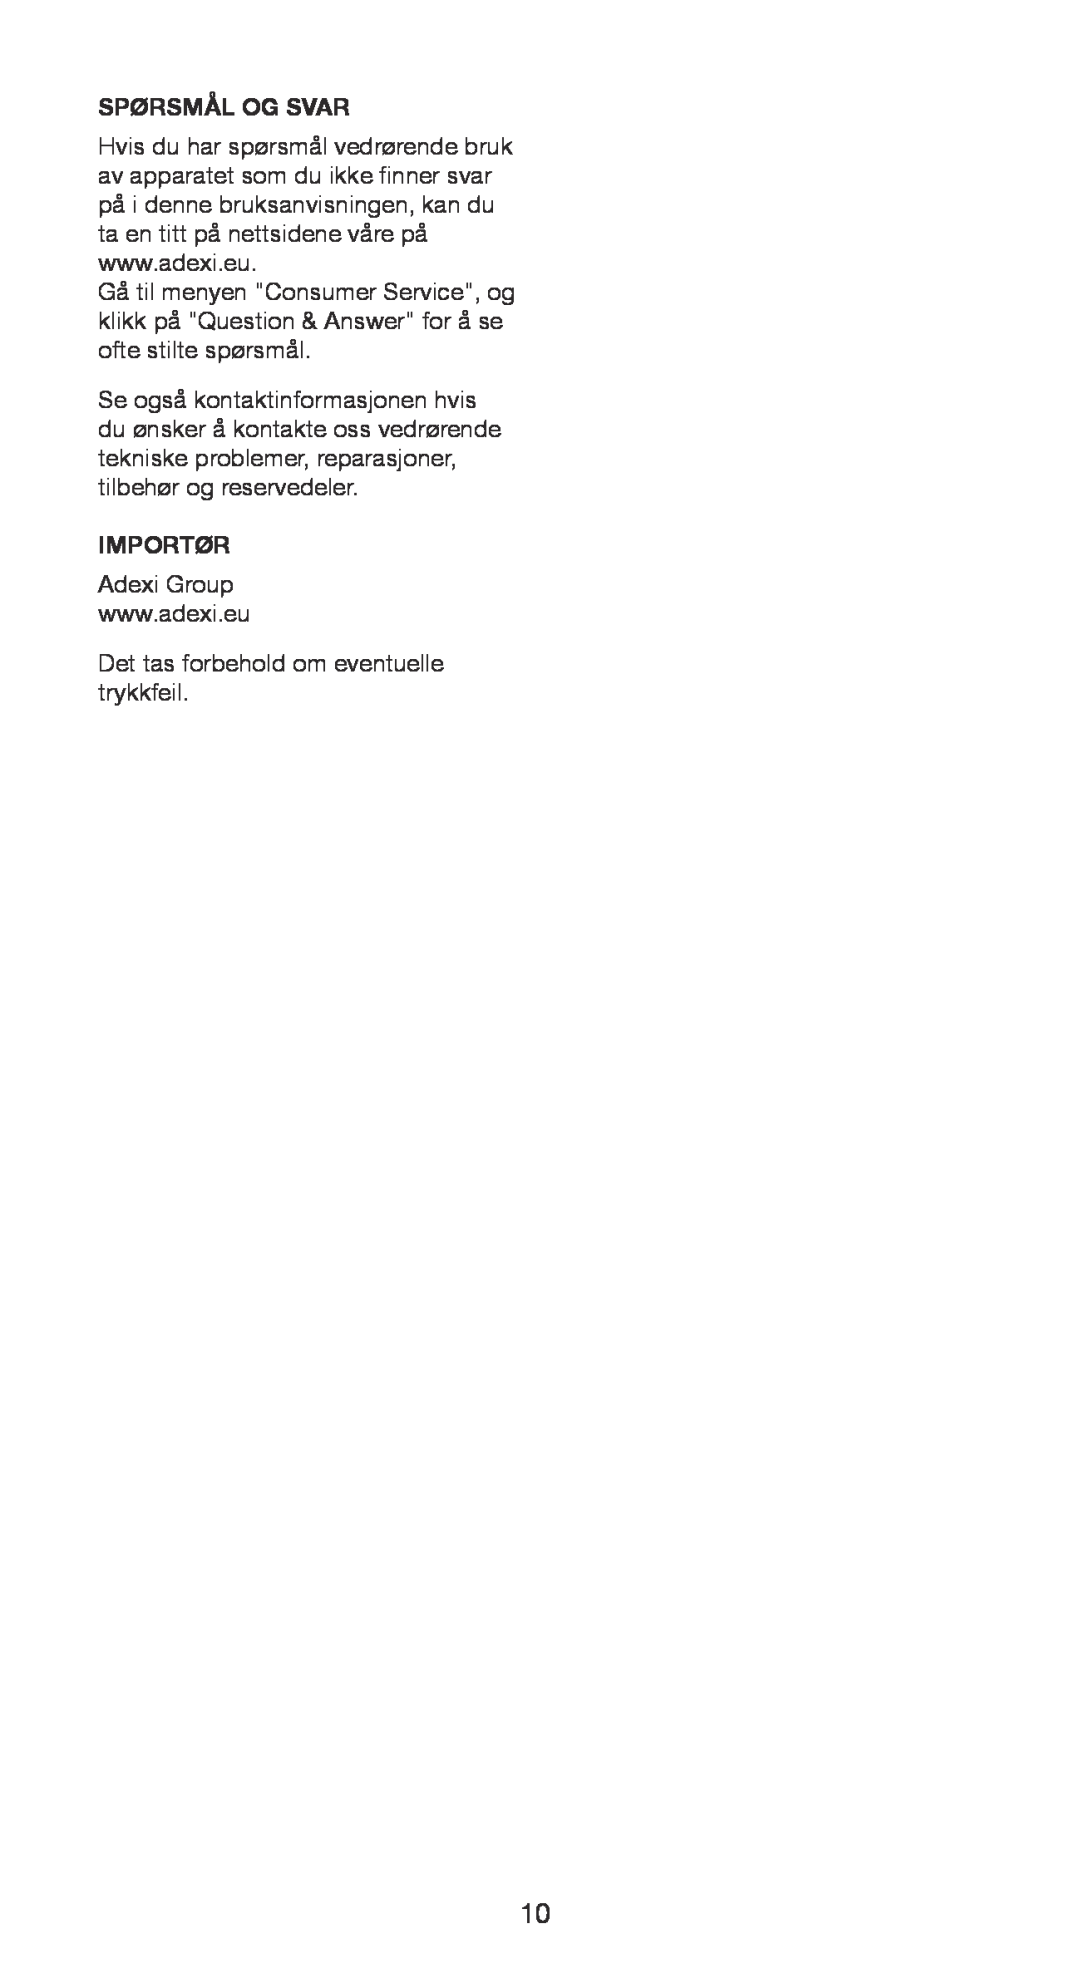 Melissa 745-95 manual Spørsmål Og Svar, Importør, Adexi Group, Det tas forbehold om eventuelle trykkfeil 